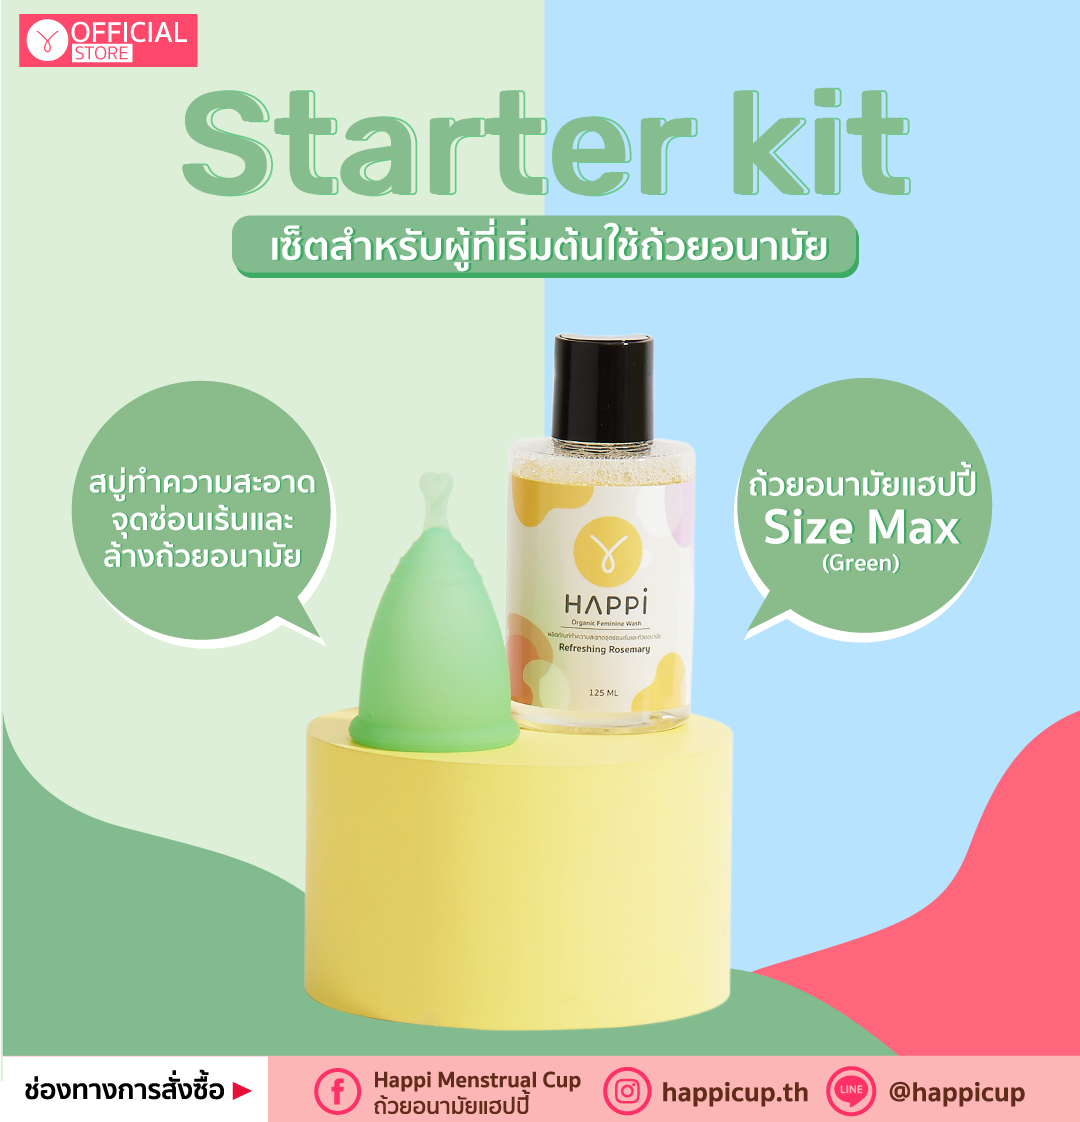 Starter Kit Max (Green)